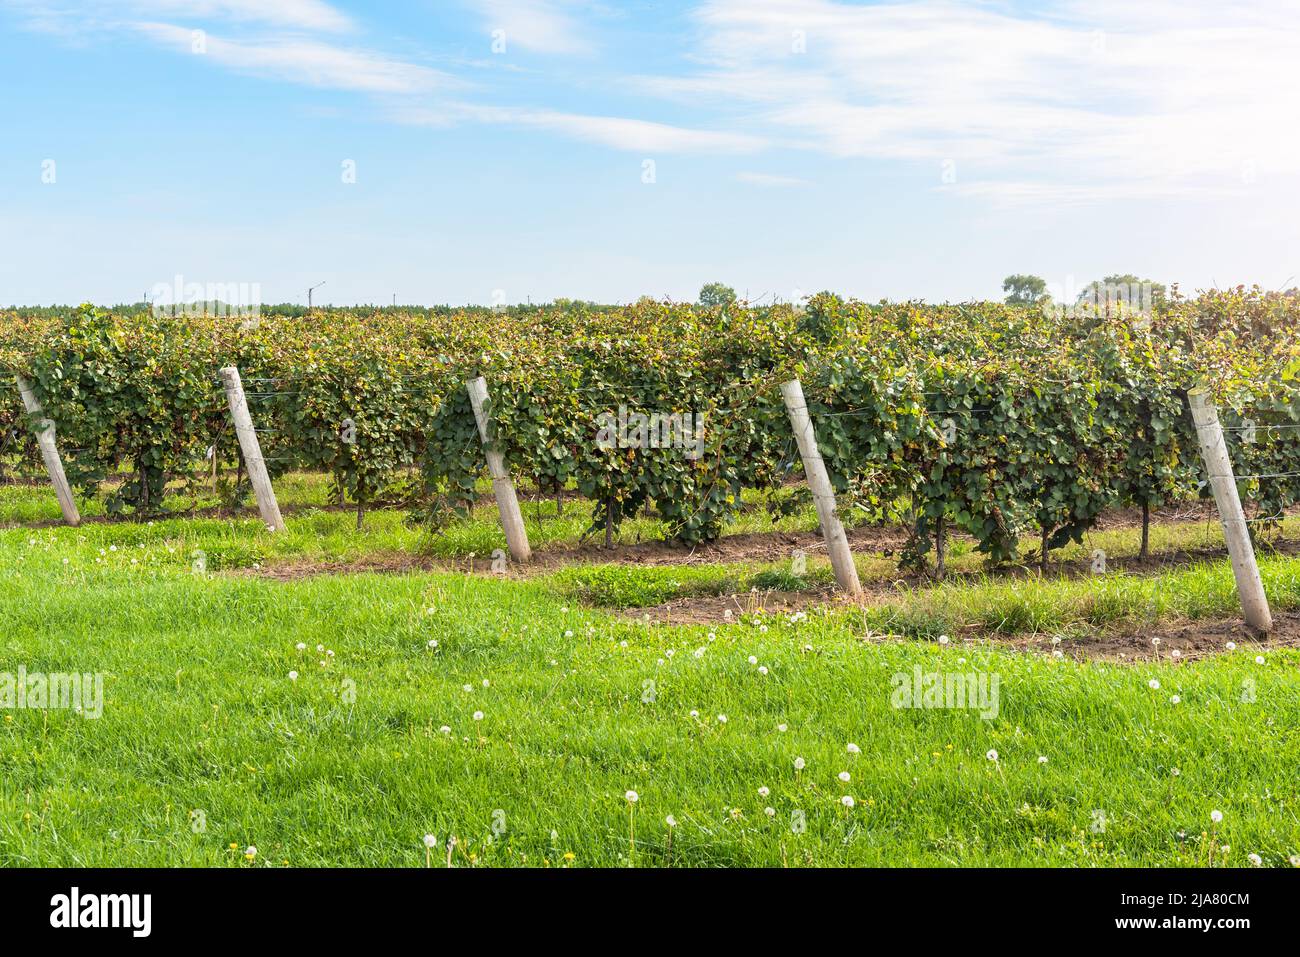 Vineyard on a sunny autumn day Stock Photo